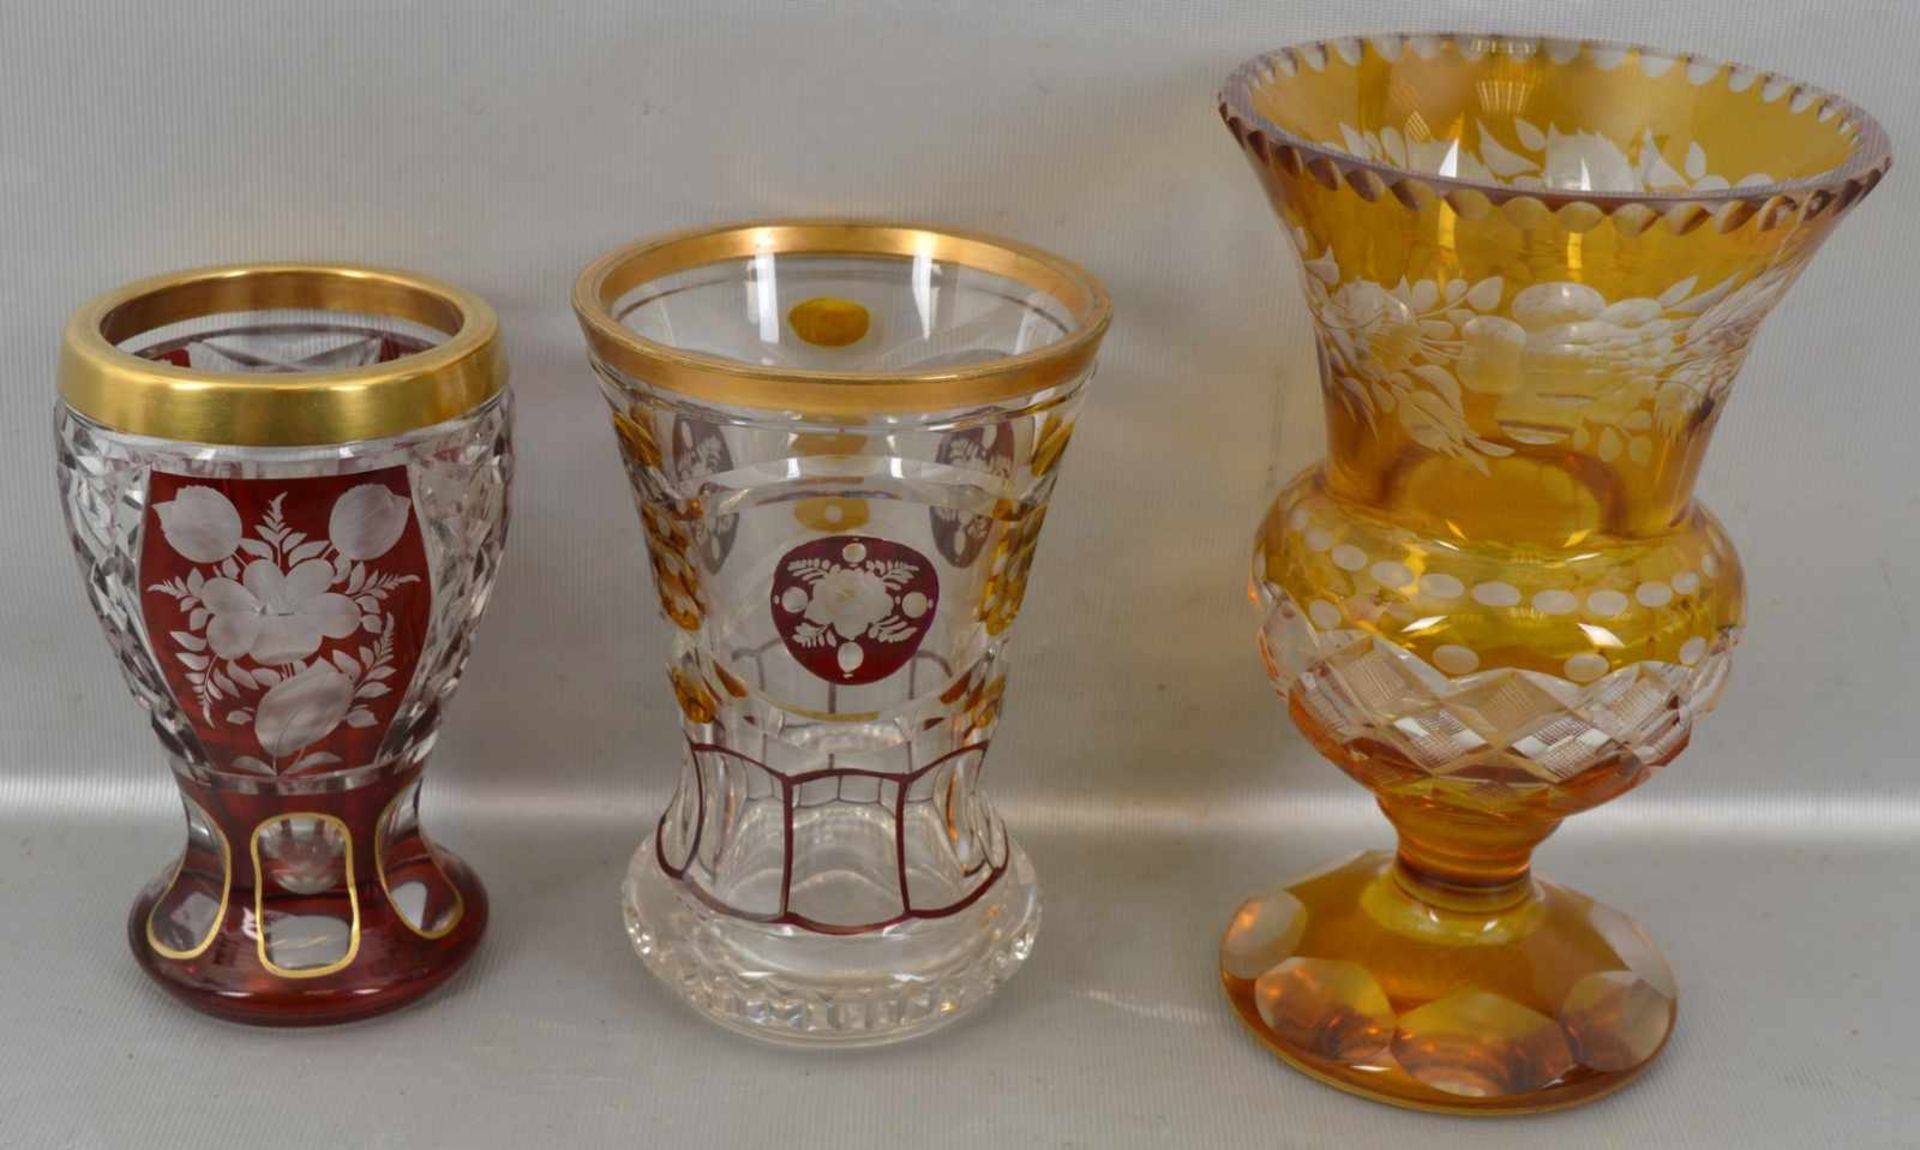 Konvolut zwei Becher und eine Vase farbl. Glas, mit rotem bzw. gelben Überfang, verschiedene